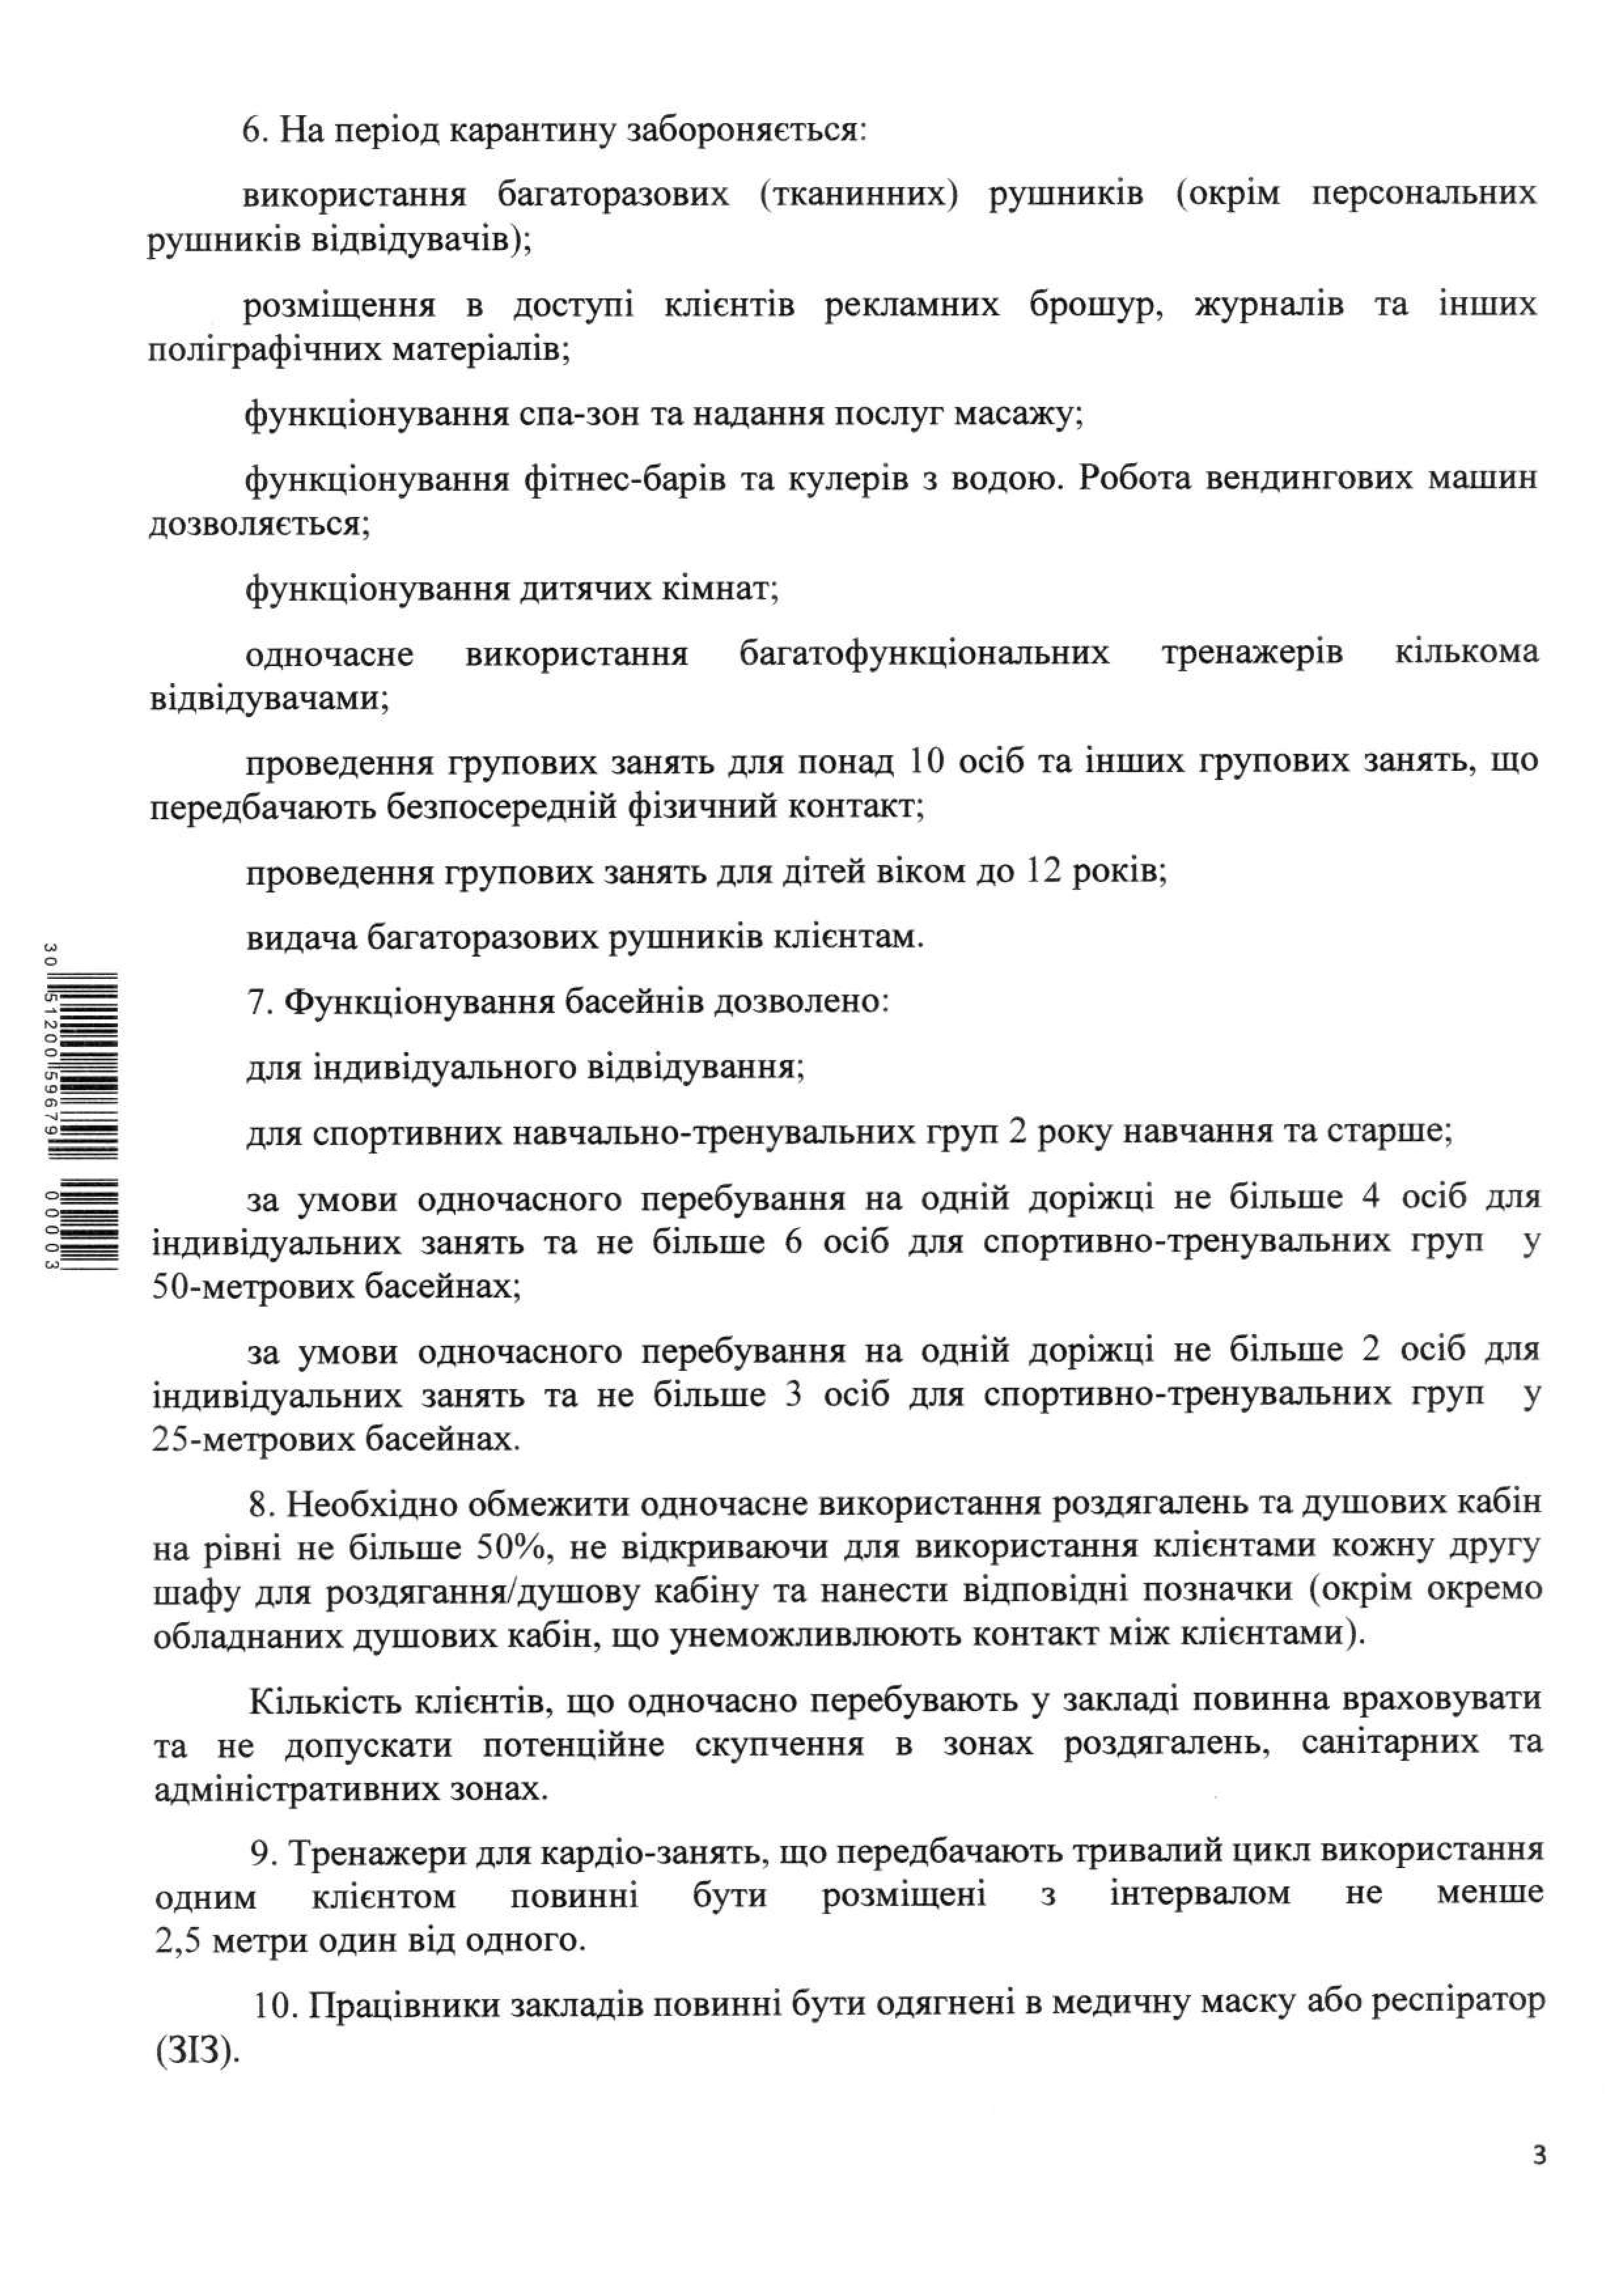 Как будут работать спортзалы с 1 июня. Постановление санврача: moz.gov.ua